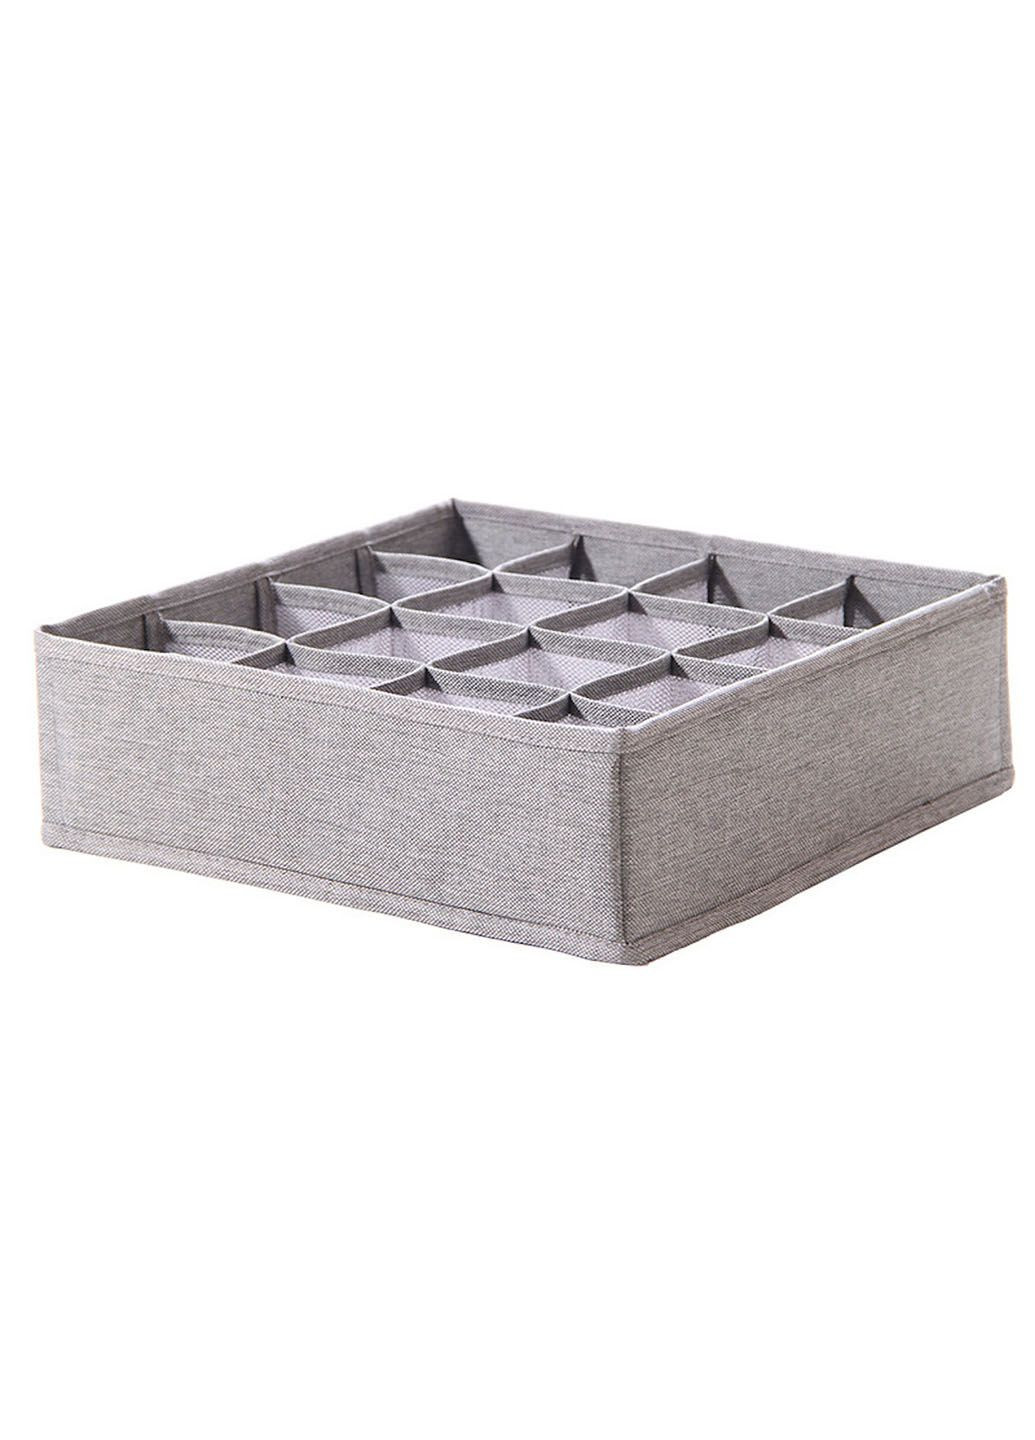 Стильный органайзер для вещей Stenson коробка для хранения белья на 24 секции 32*32*10 см Idea (293175037)